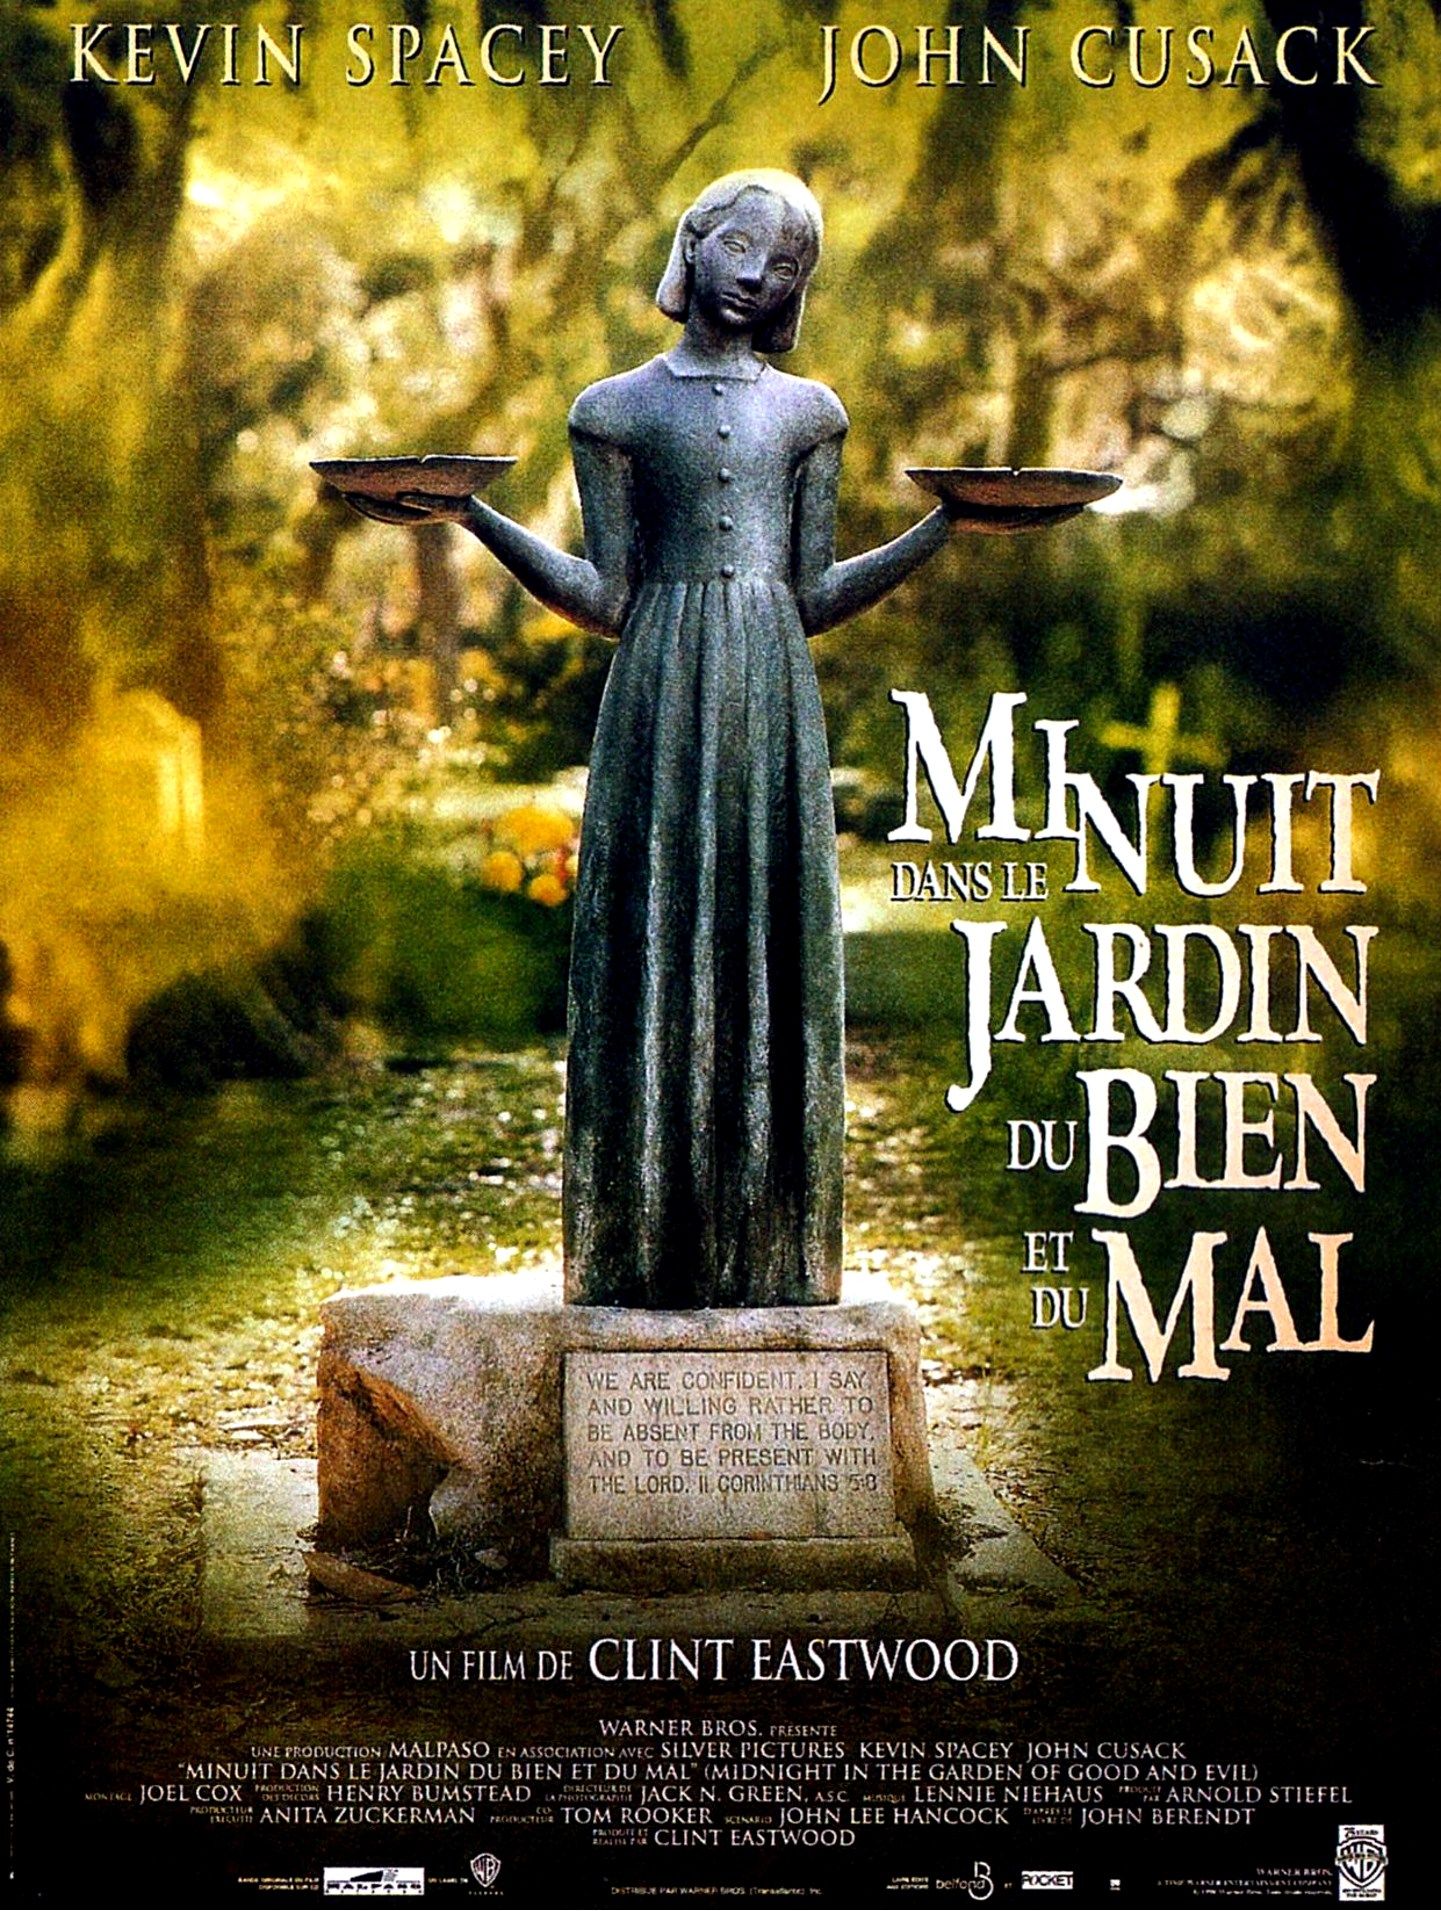 Mrc Le Bien Ou Le Mal Minuit dans le jardin du bien et du mal - Film (1997) - SensCritique